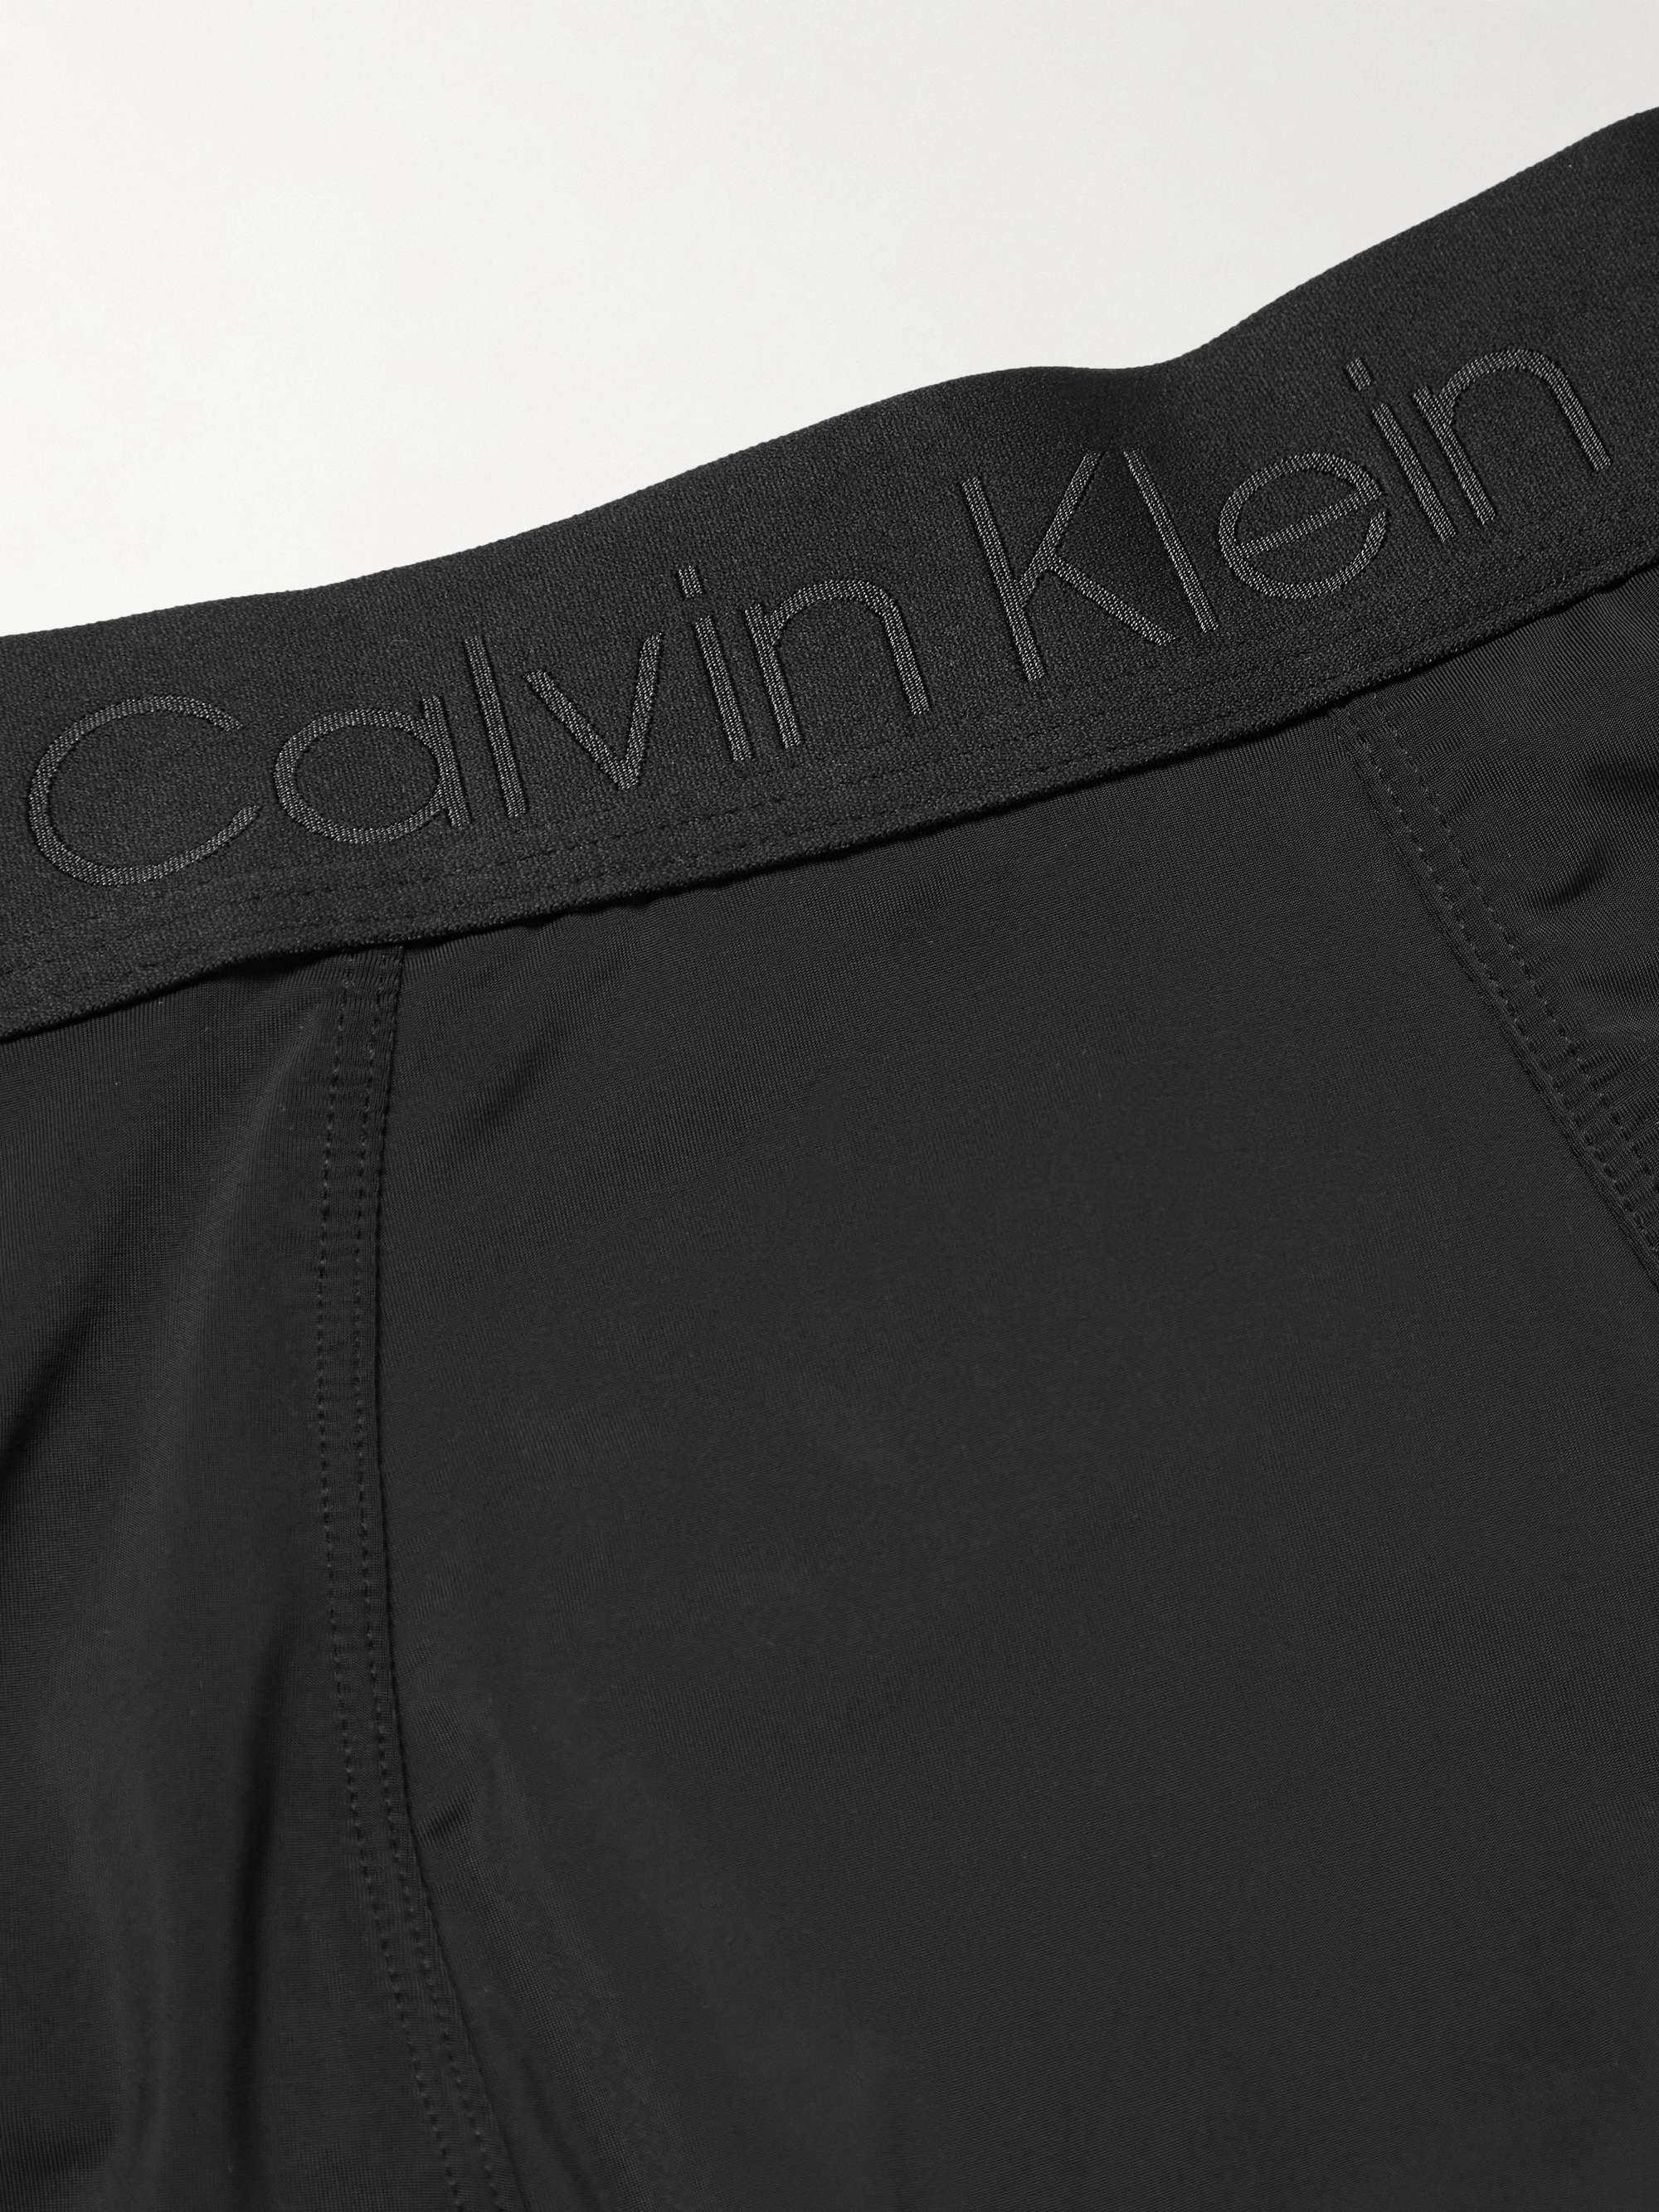 CALVIN KLEIN UNDERWEAR Stretch-Jersey Boxer Briefs